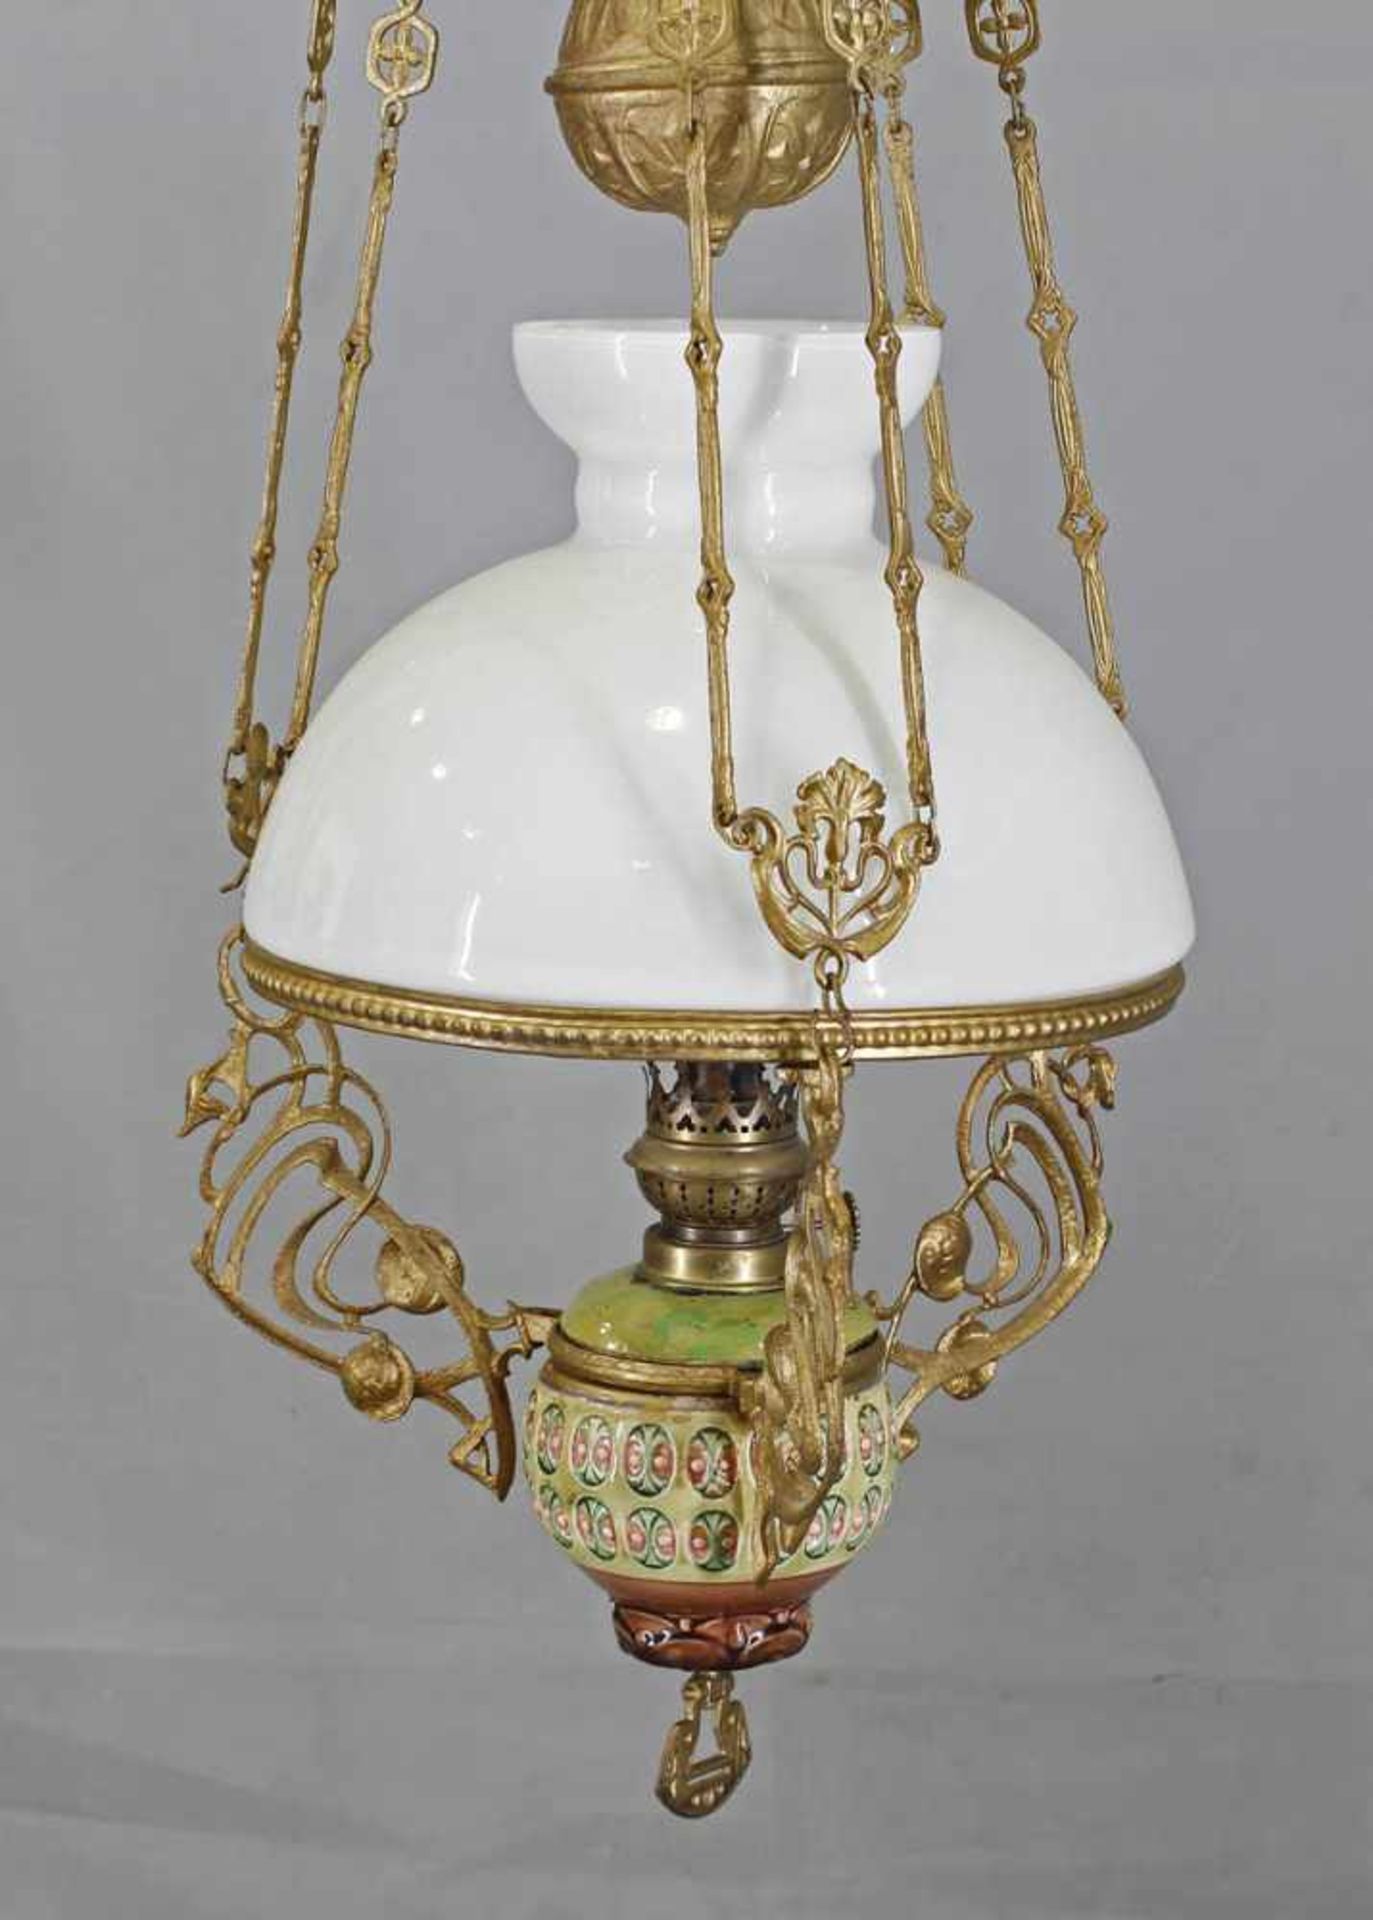 Petroleum- Deckenlampe Jugendstil.um 1900, goldfarben gefasstes Metallgestell mit Majolika- - Bild 2 aus 2